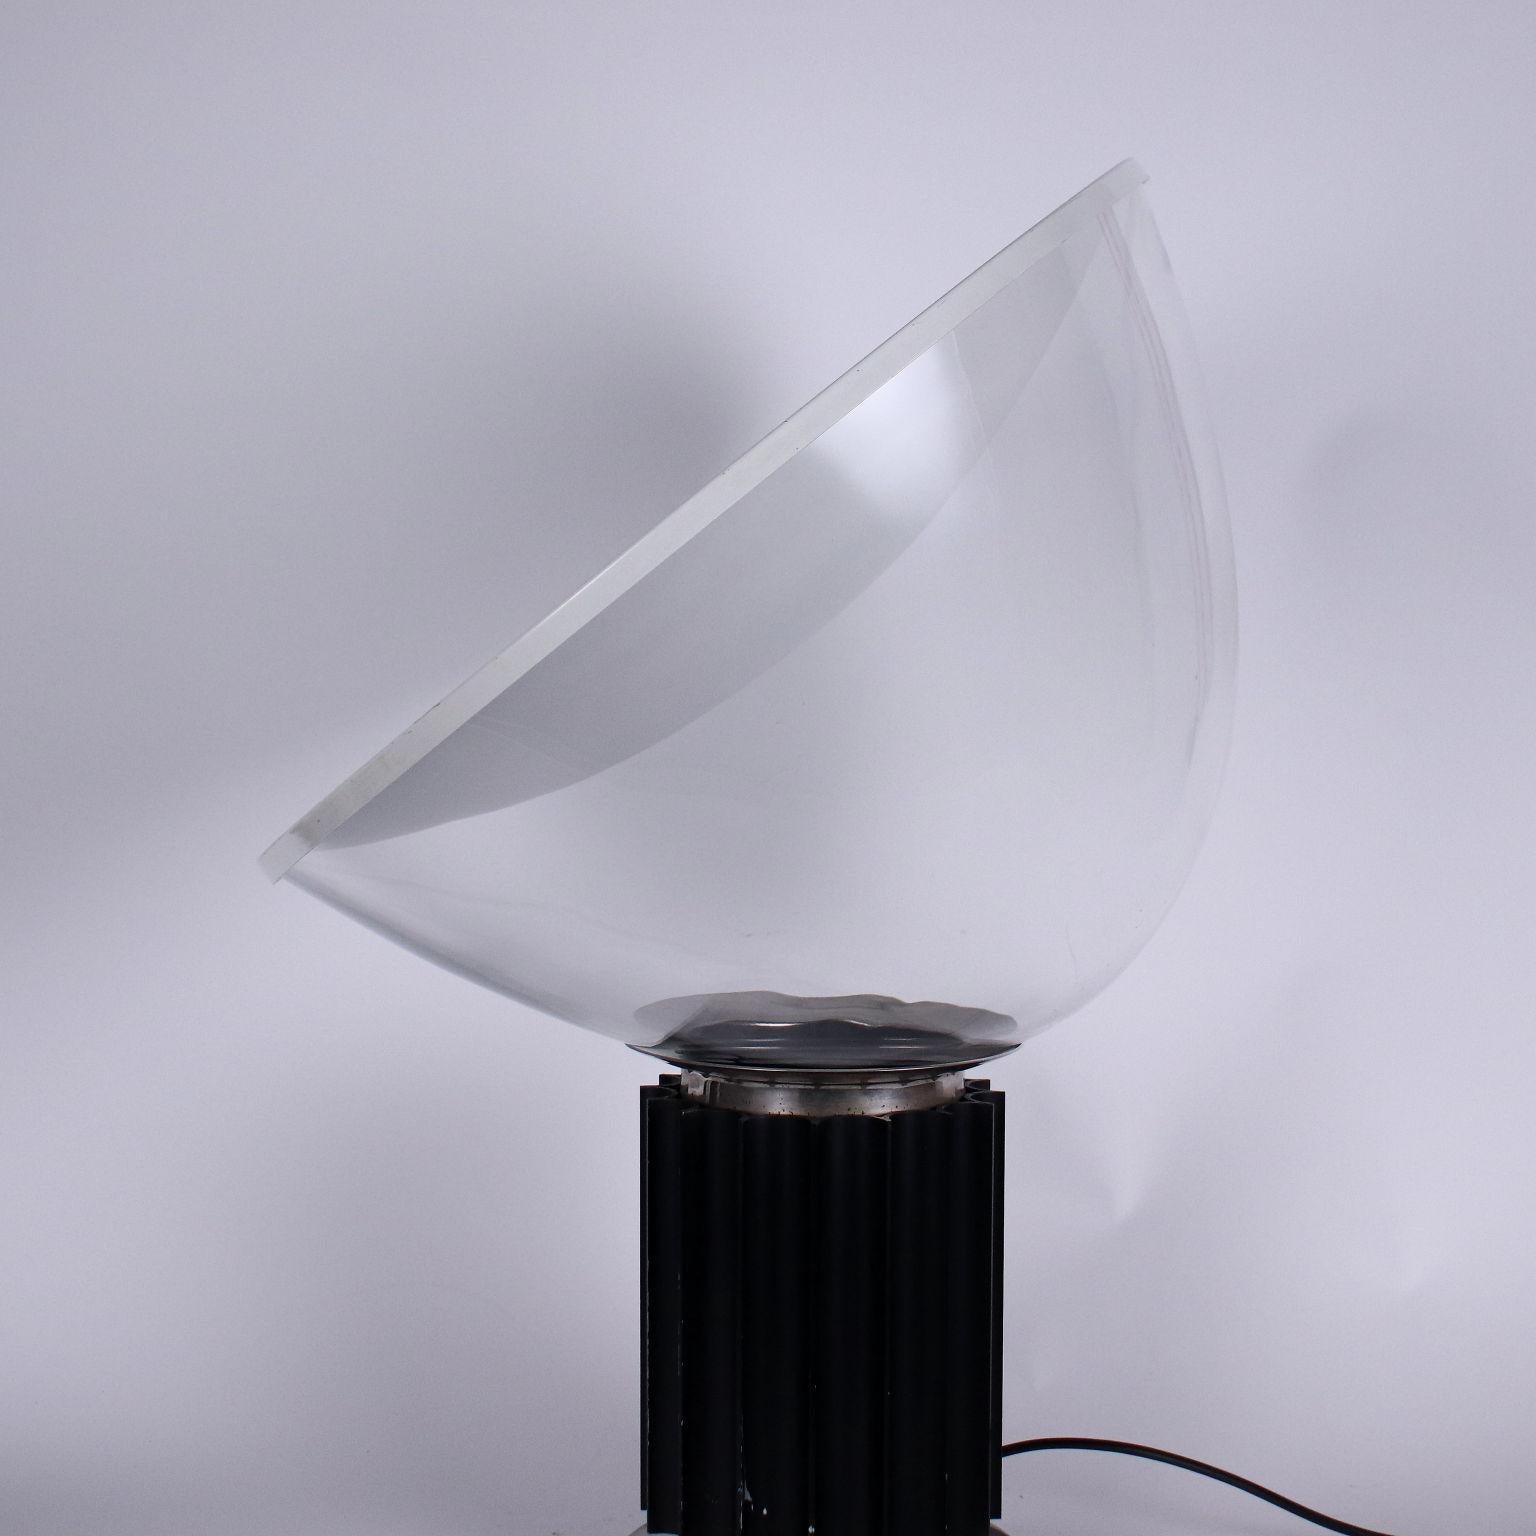 Italian Taccia Lamp by Achille and Pier Giacomo Castiglioni for Flos 1960s